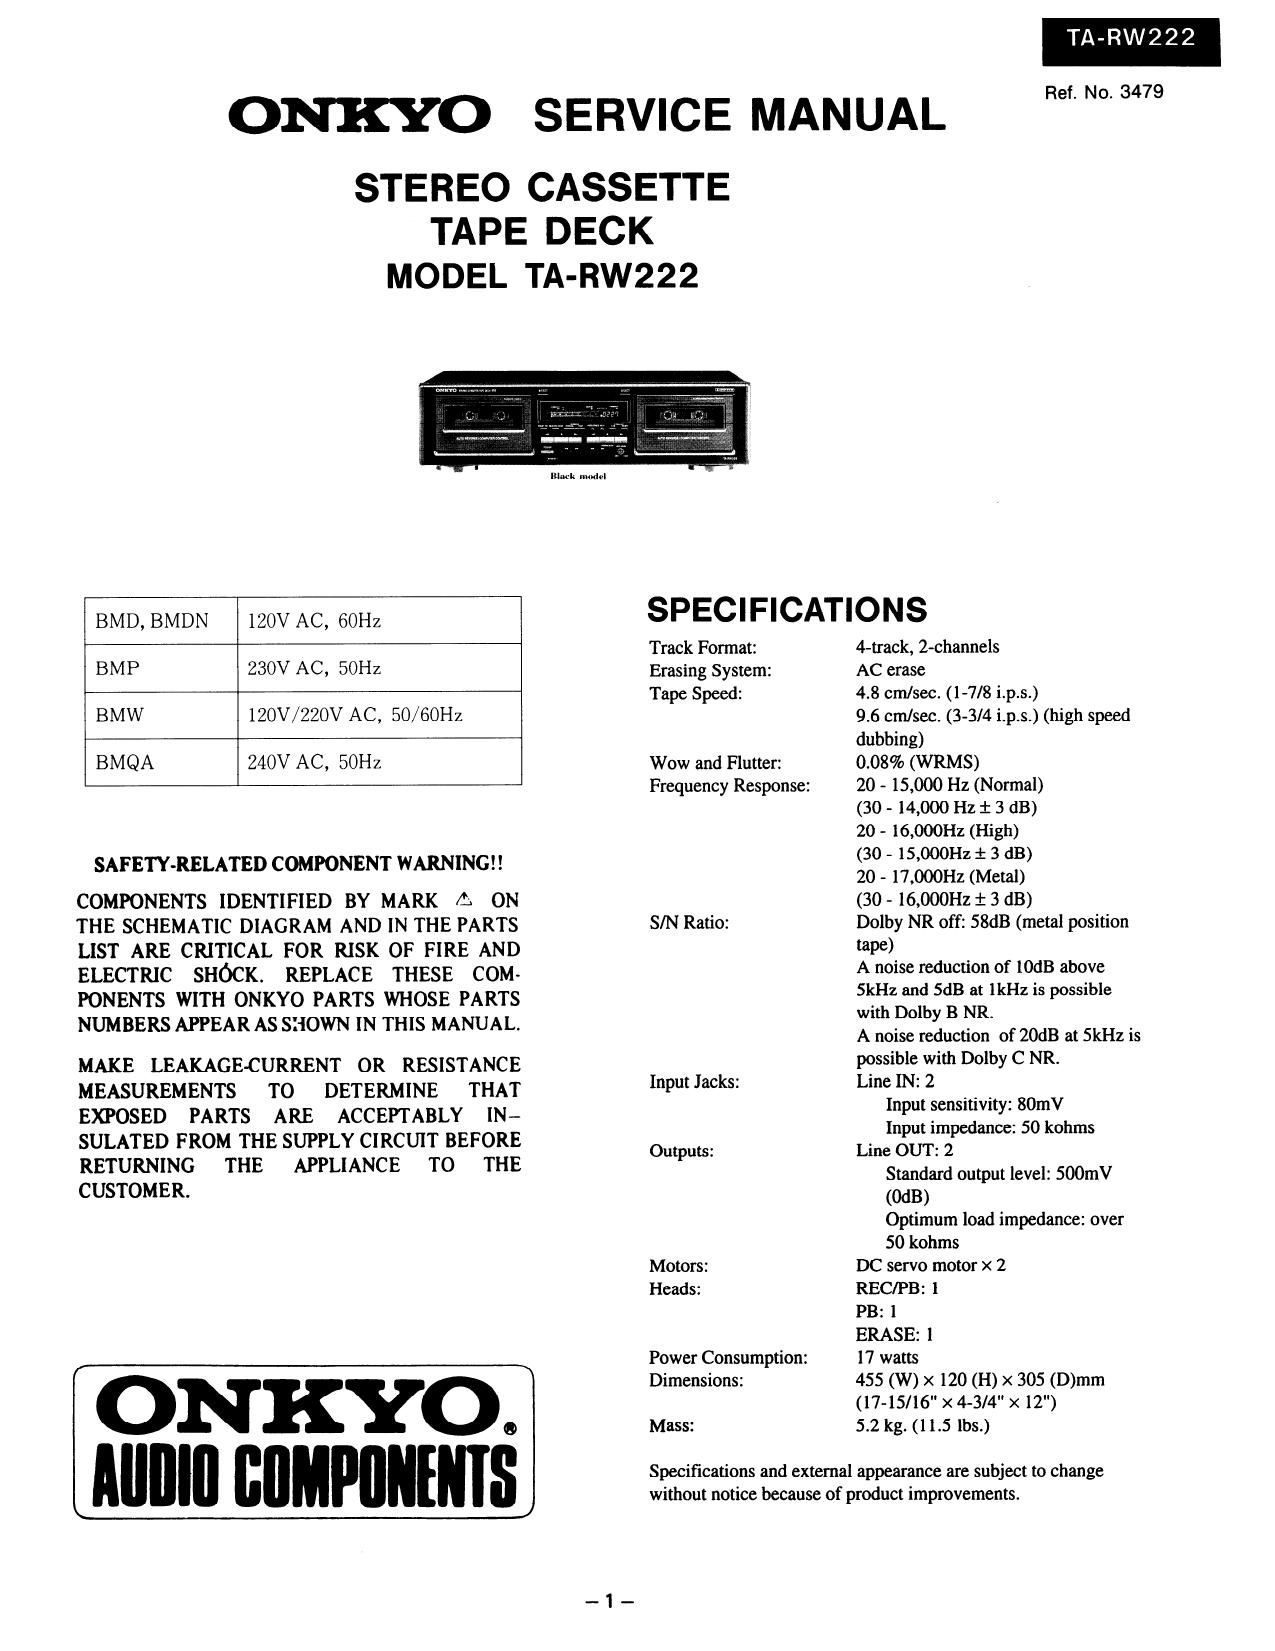 Onkyo TARW 222 Service Manual